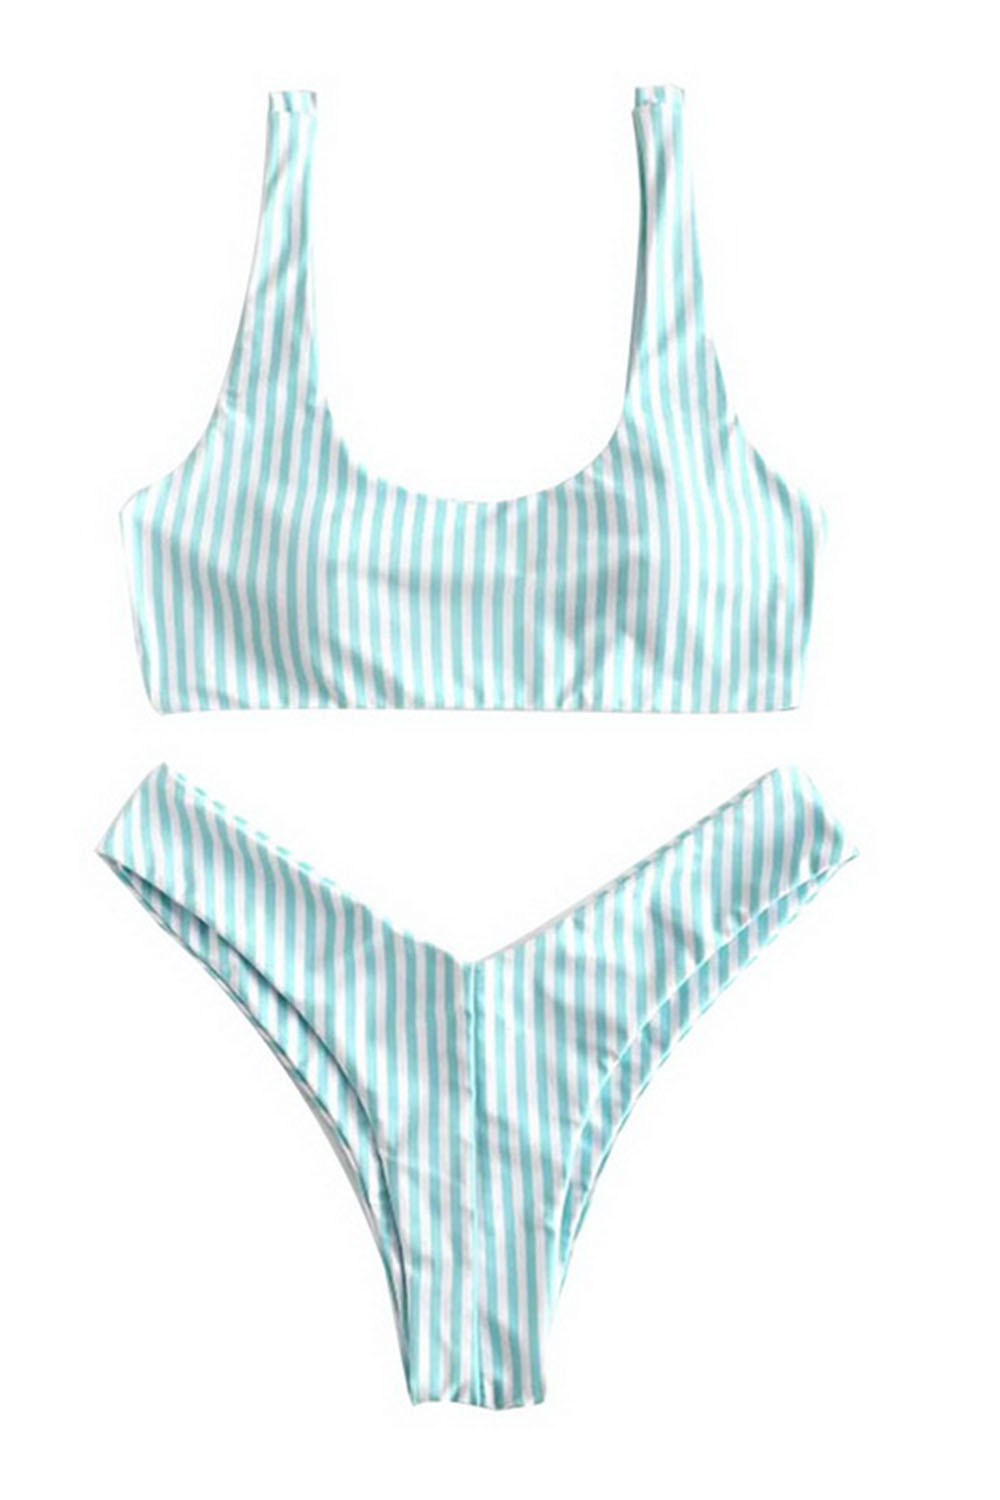 Hot Striped Bikini Set Brazilian Thong Sexy Swimwear